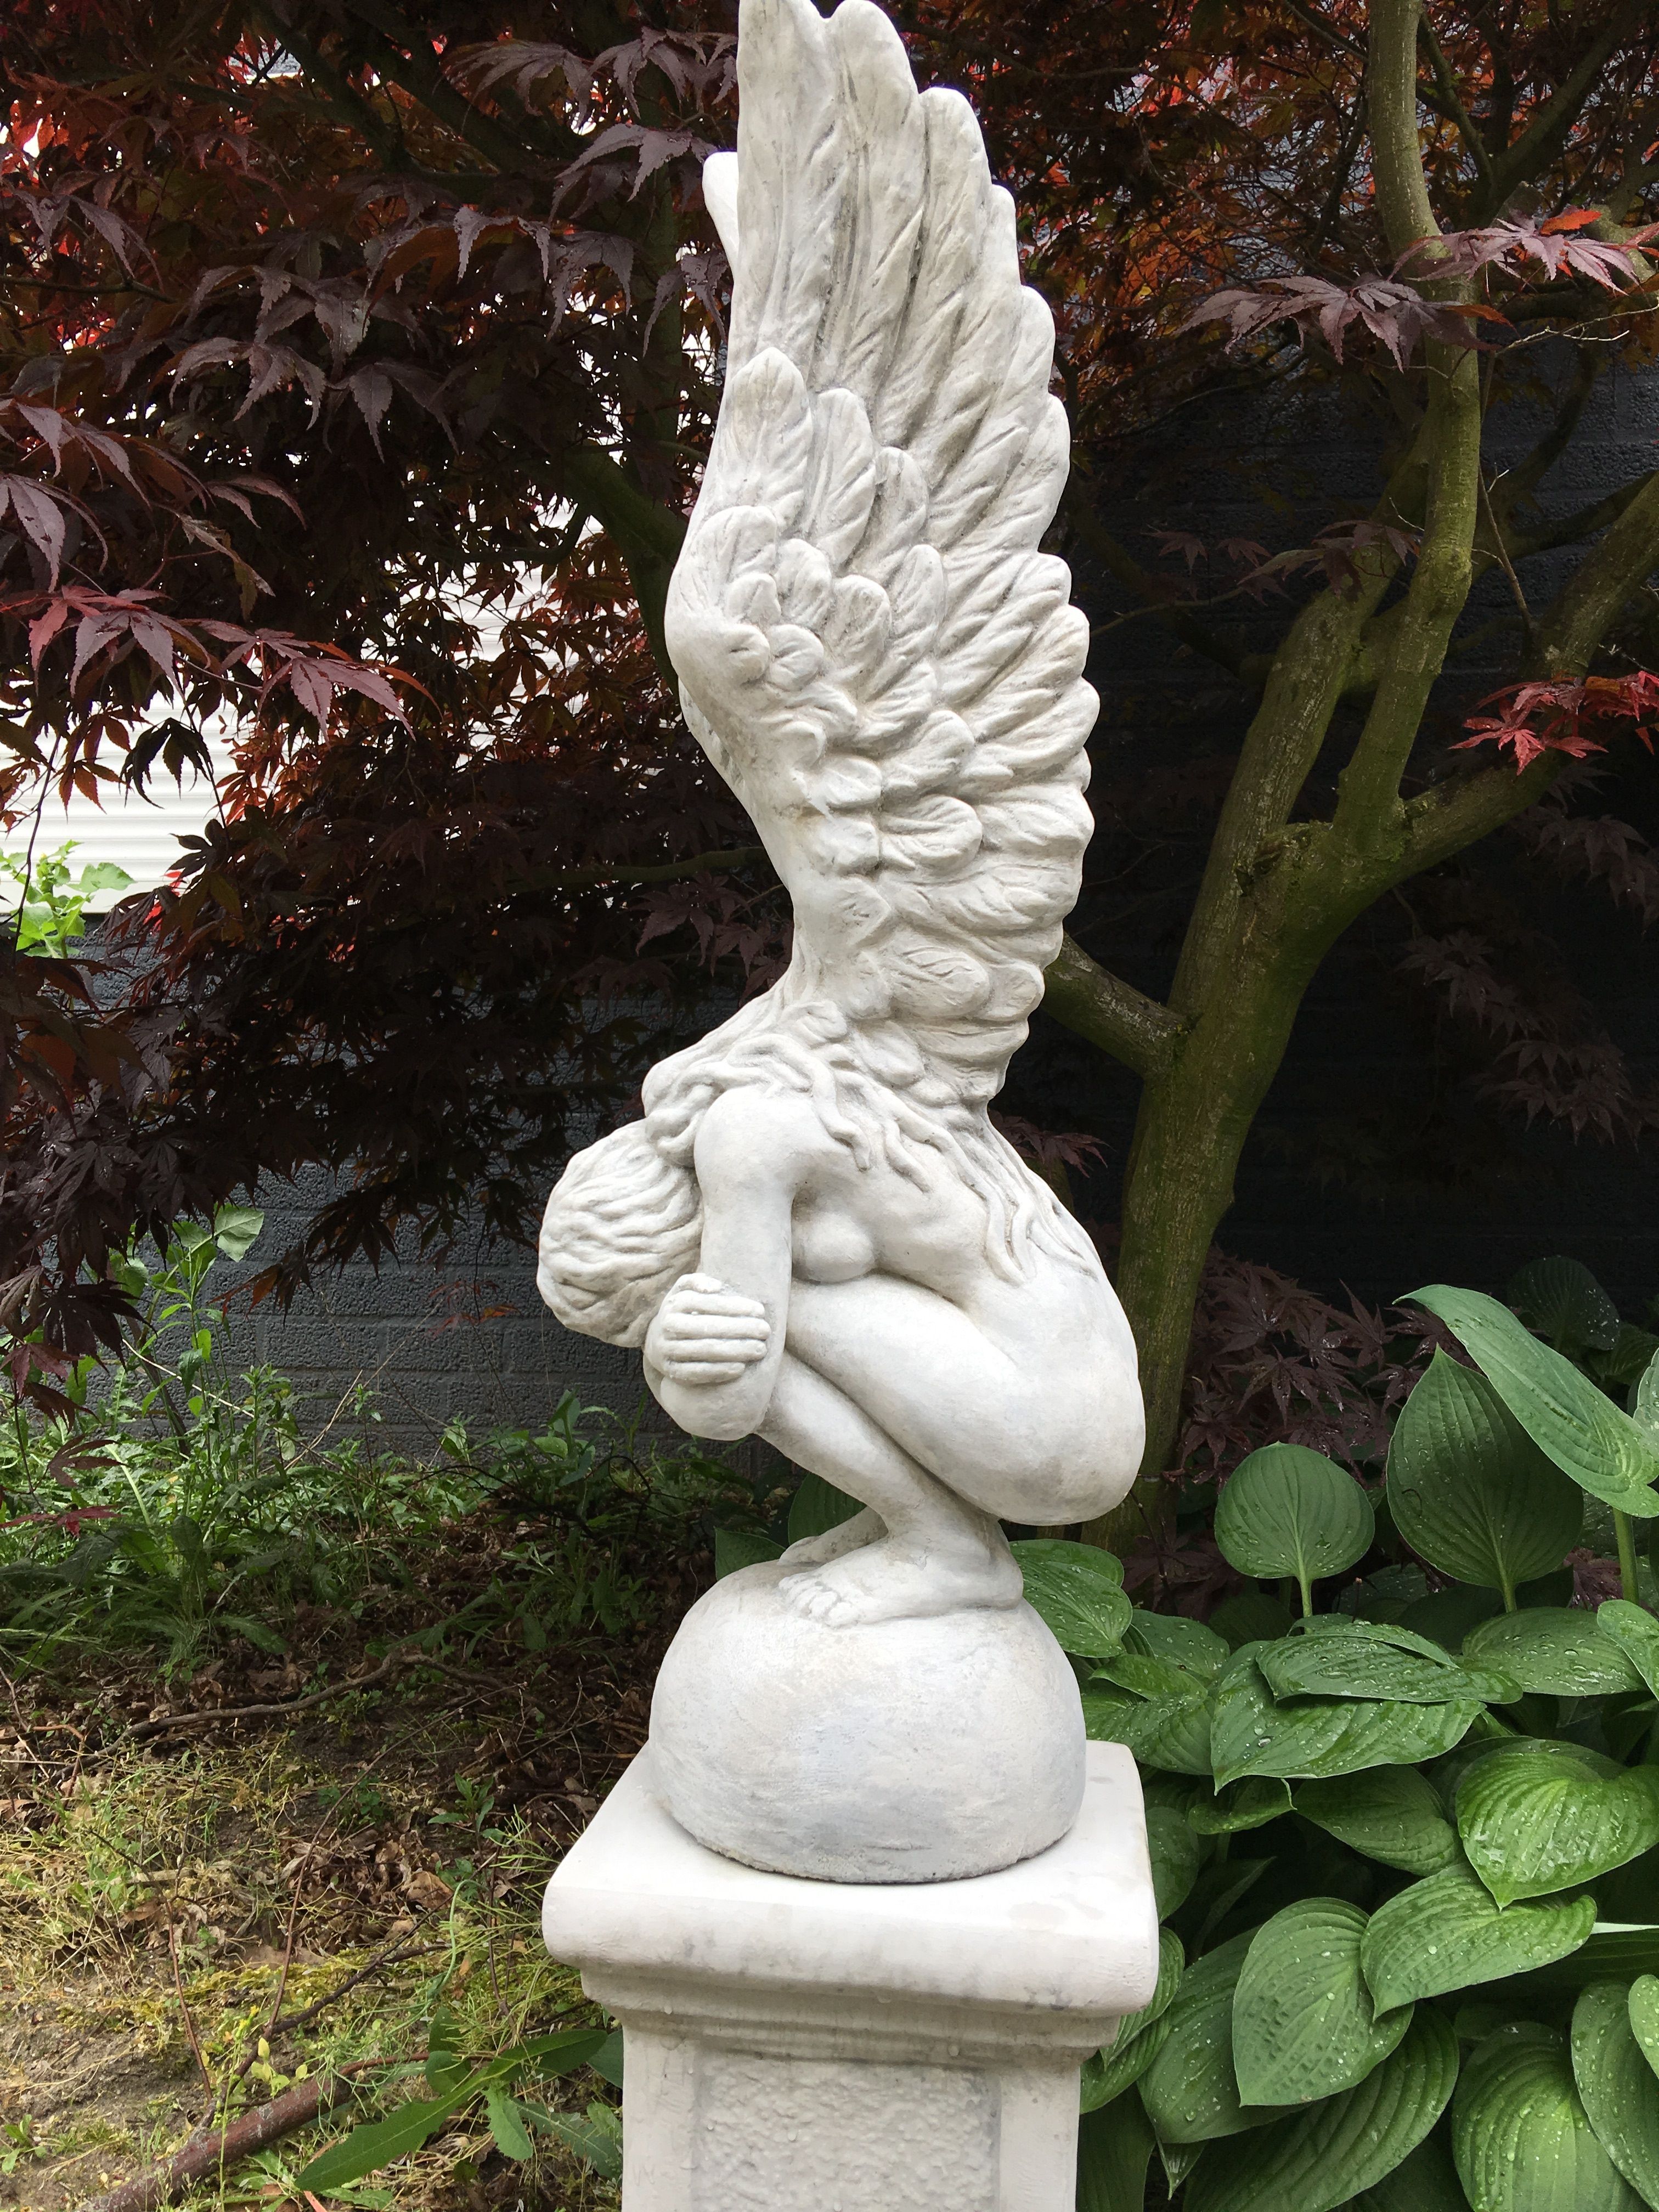 Knielende Engel met vleugels omhoog, mooi stenen beeld!